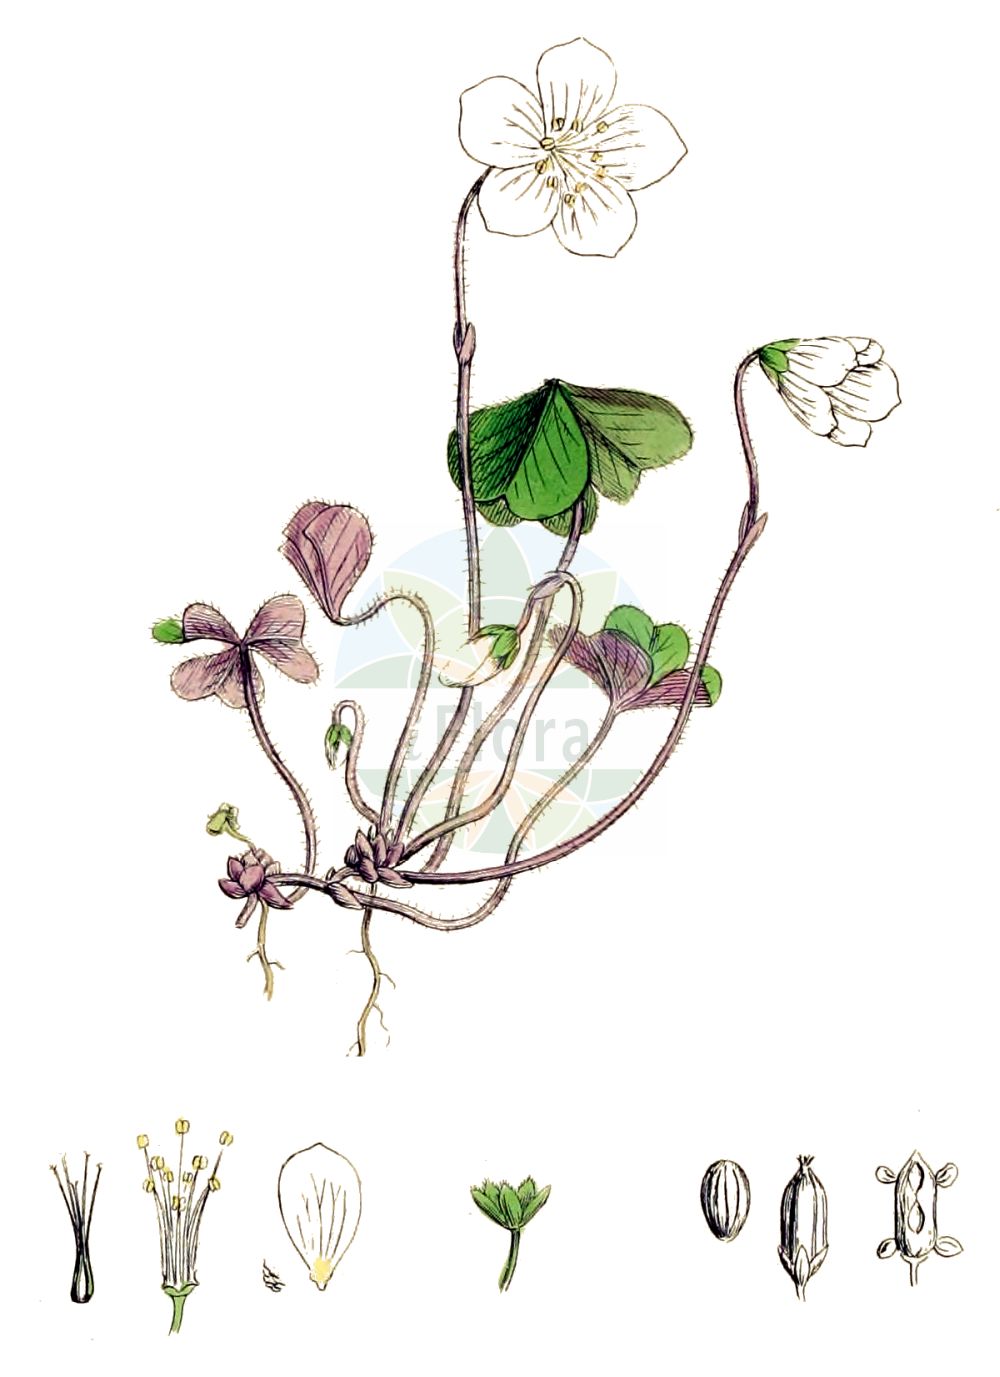 Historische Abbildung von Oxalis acetosella (Wald-Sauerklee - Wood-sorrel). Das Bild zeigt Blatt, Bluete, Frucht und Same. ---- Historical Drawing of Oxalis acetosella (Wald-Sauerklee - Wood-sorrel). The image is showing leaf, flower, fruit and seed.(Oxalis acetosella,Wald-Sauerklee,Wood-sorrel,Oxalis acetosella,Oxalis longiflora,Oxalis nemoralis,Oxalis parviflora,Oxalis vulgaris,Oxys acetosella,Wald-Sauerklee,Wood-sorrel,White Wood Sorrel,Mountain Woodsorrel,Common Wood Sorrel,Oxalis,Sauerklee,Sorrel,Oxalidaceae,Sauerkleegewächse,Wood Sorrel family,Blatt,Bluete,Frucht,Same,leaf,flower,fruit,seed,Sowerby (1790-1813))